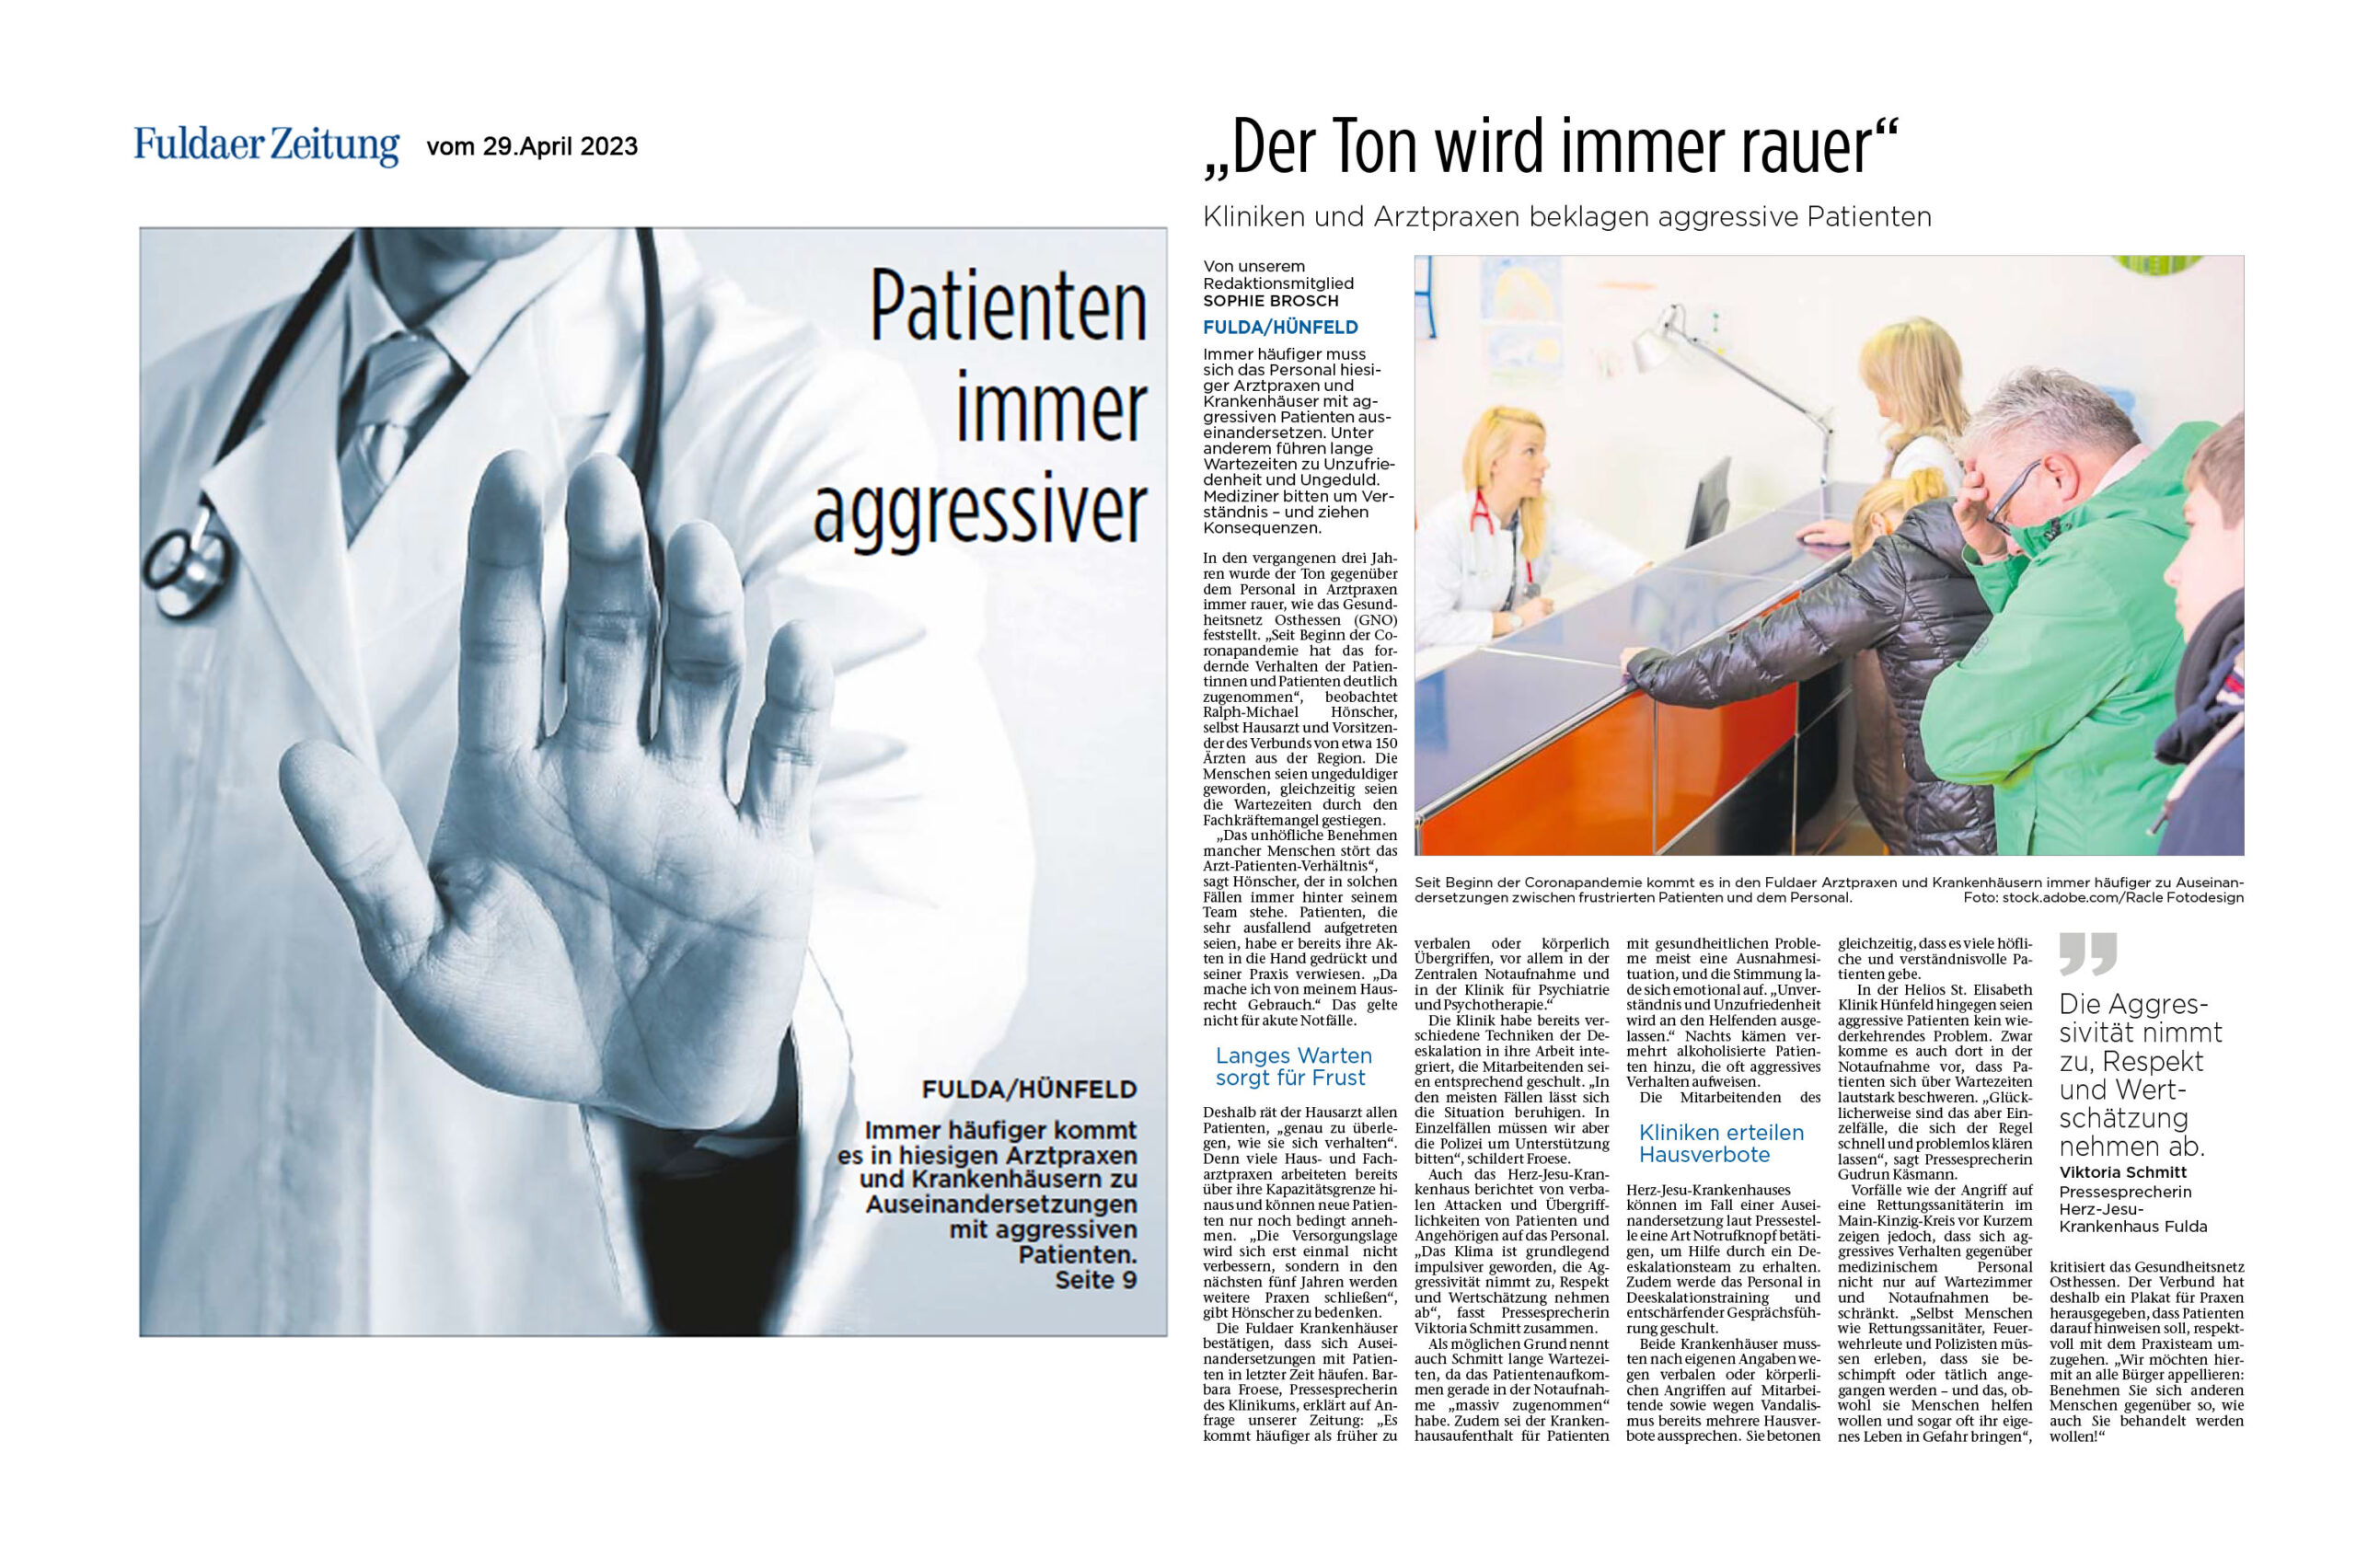 Fuldaer Zeitung: „Ton wird immer rauer“: Kliniken und Arztpraxen klagen über aggressive Patienten